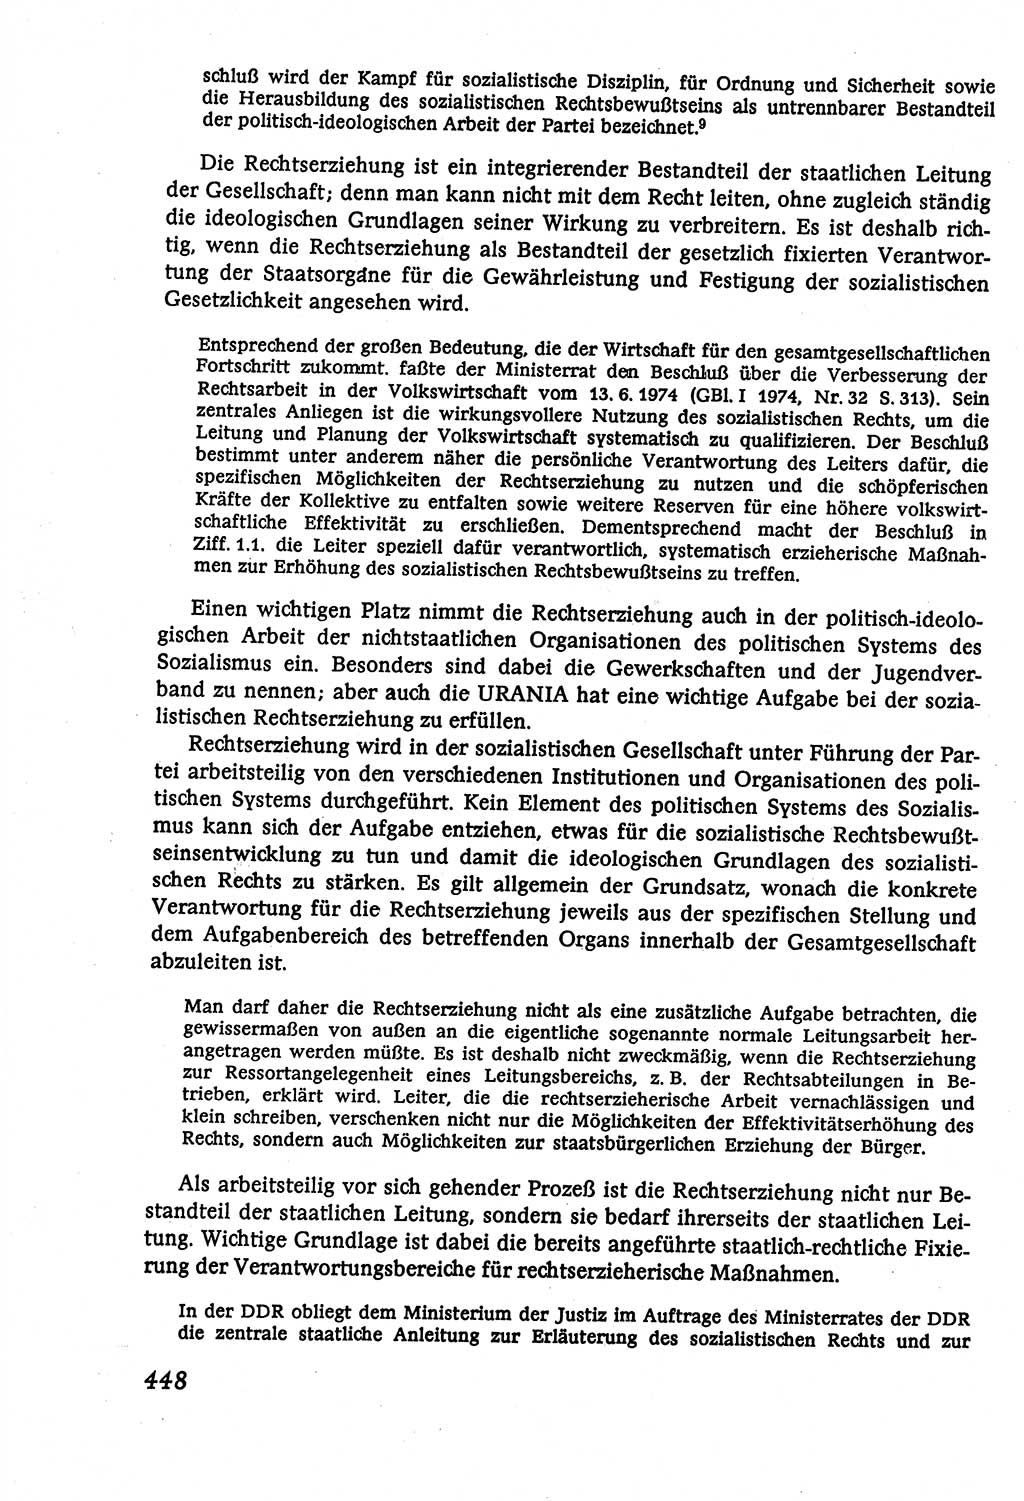 Marxistisch-leninistische (ML) Staats- und Rechtstheorie [Deutsche Demokratische Republik (DDR)], Lehrbuch 1980, Seite 448 (ML St.-R.-Th. DDR Lb. 1980, S. 448)